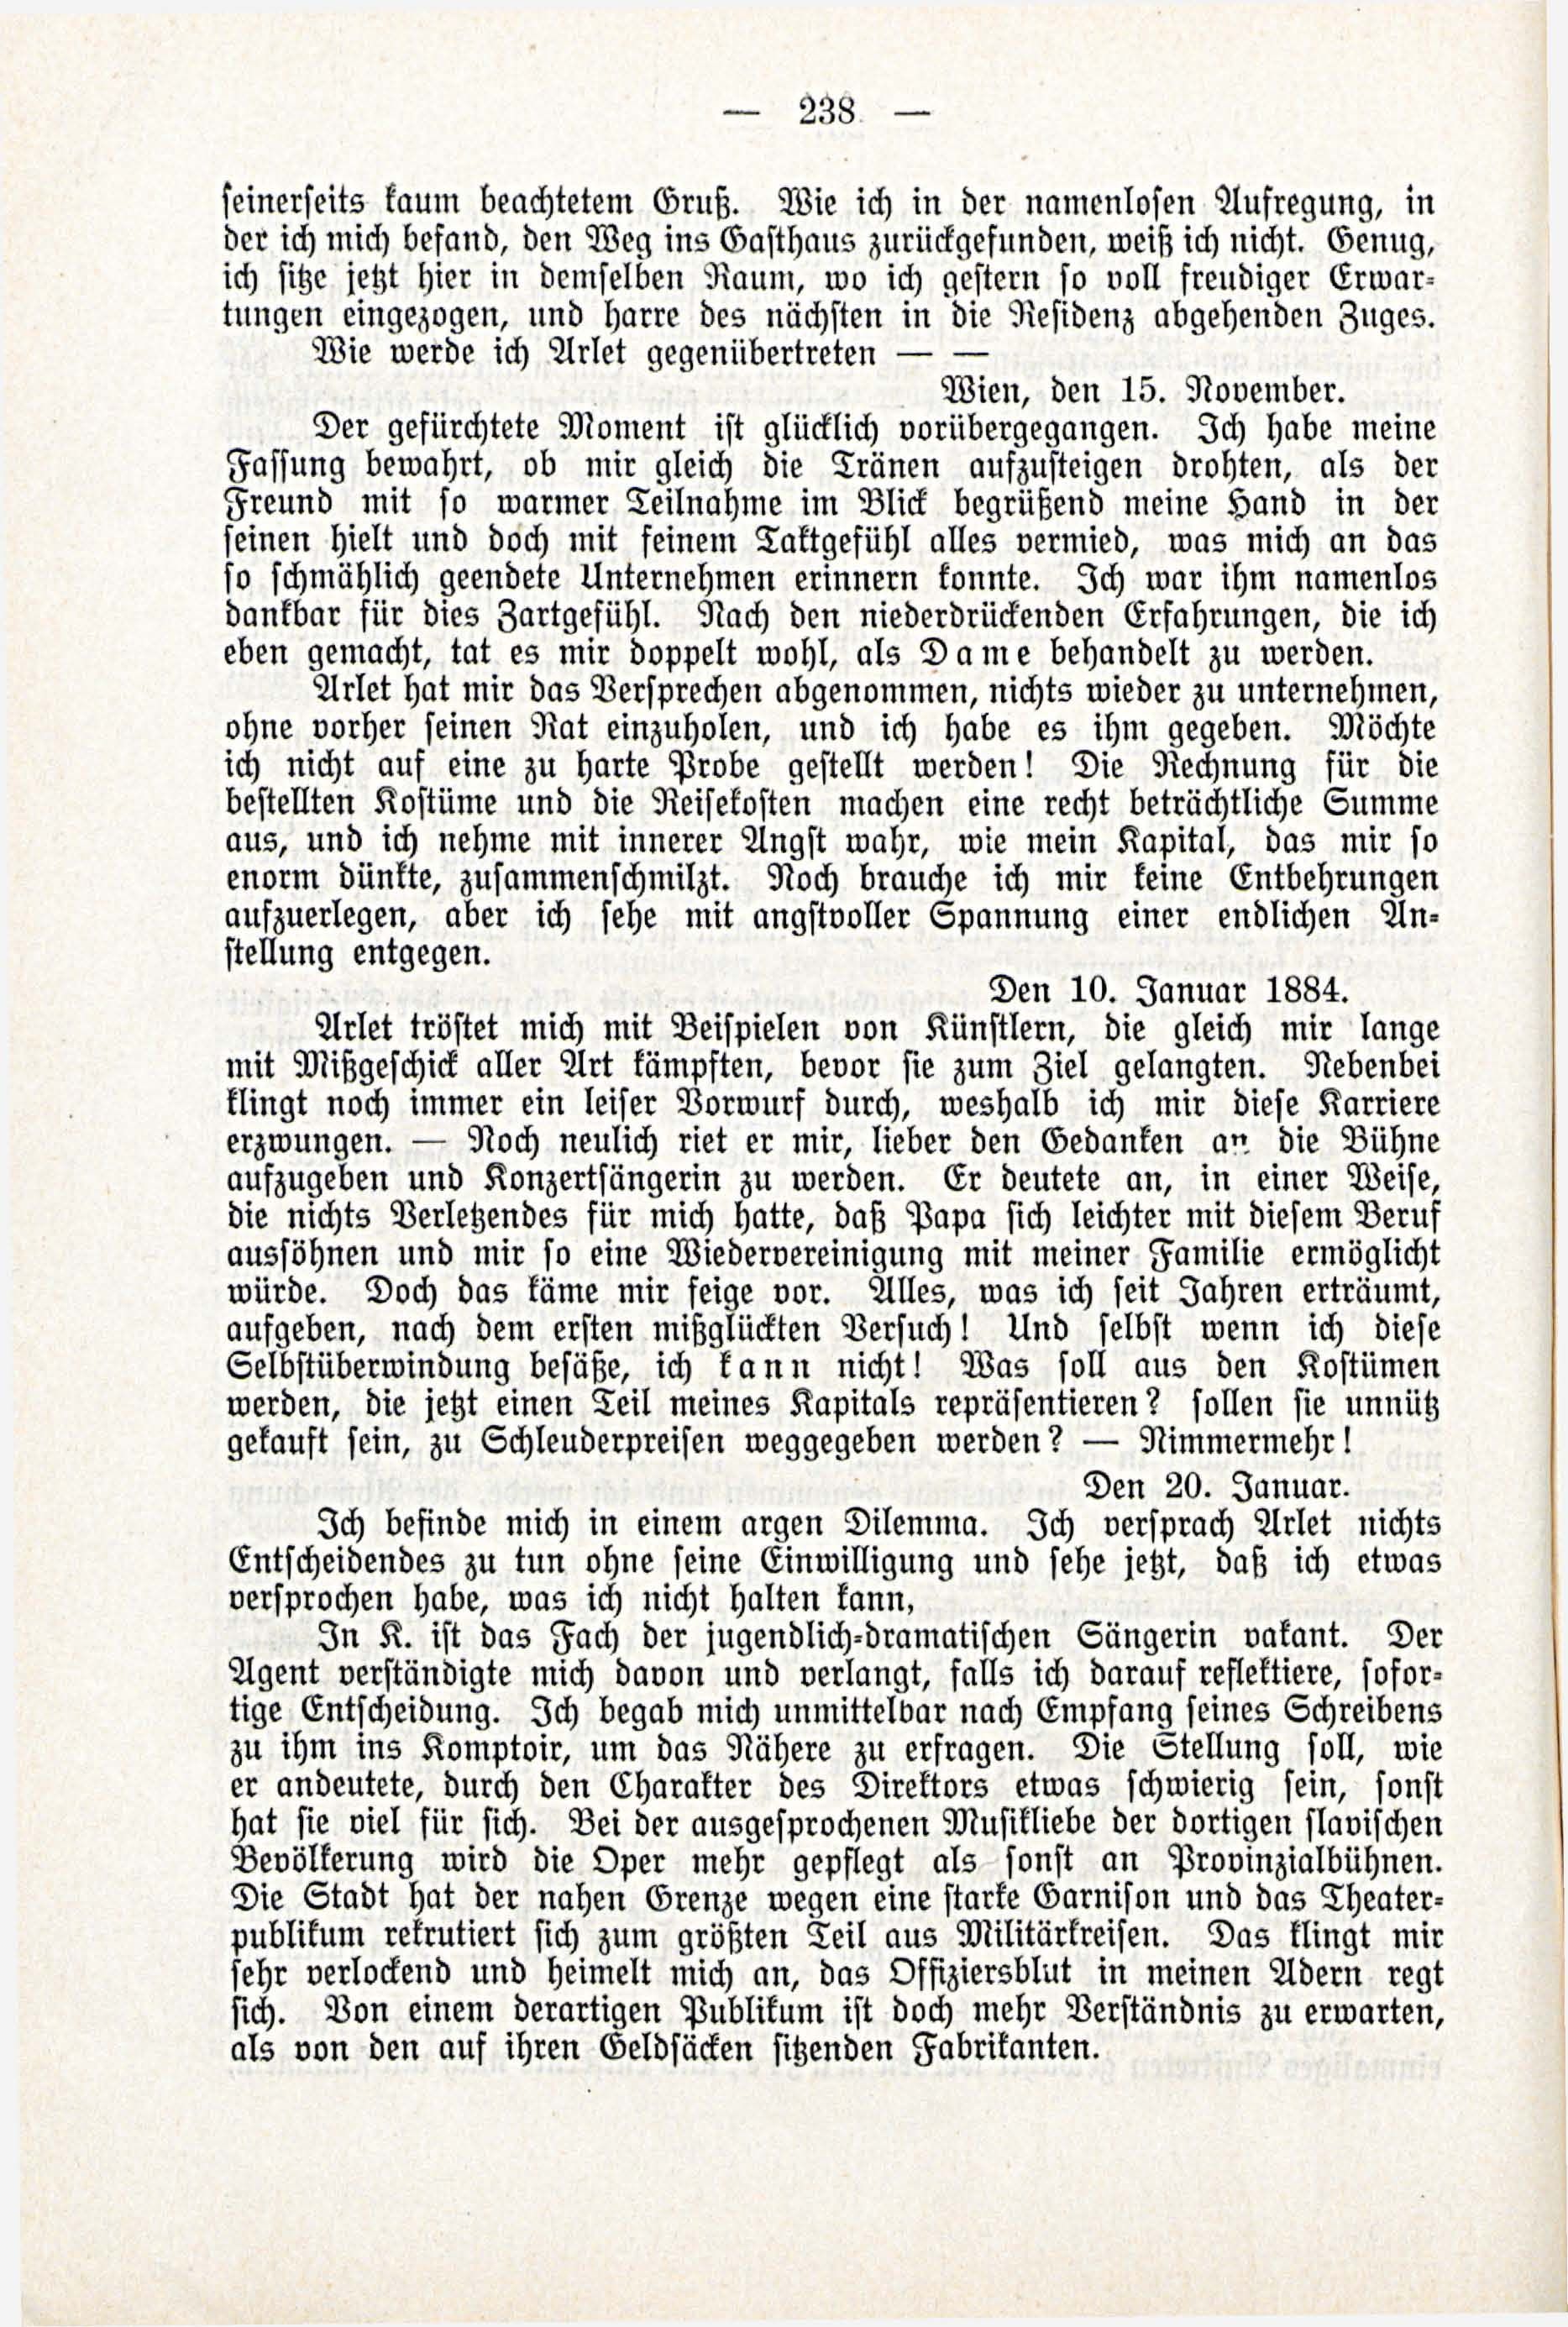 Deutsche Monatsschrift für Russland [3/03] (1914) | 84. (238) Main body of text